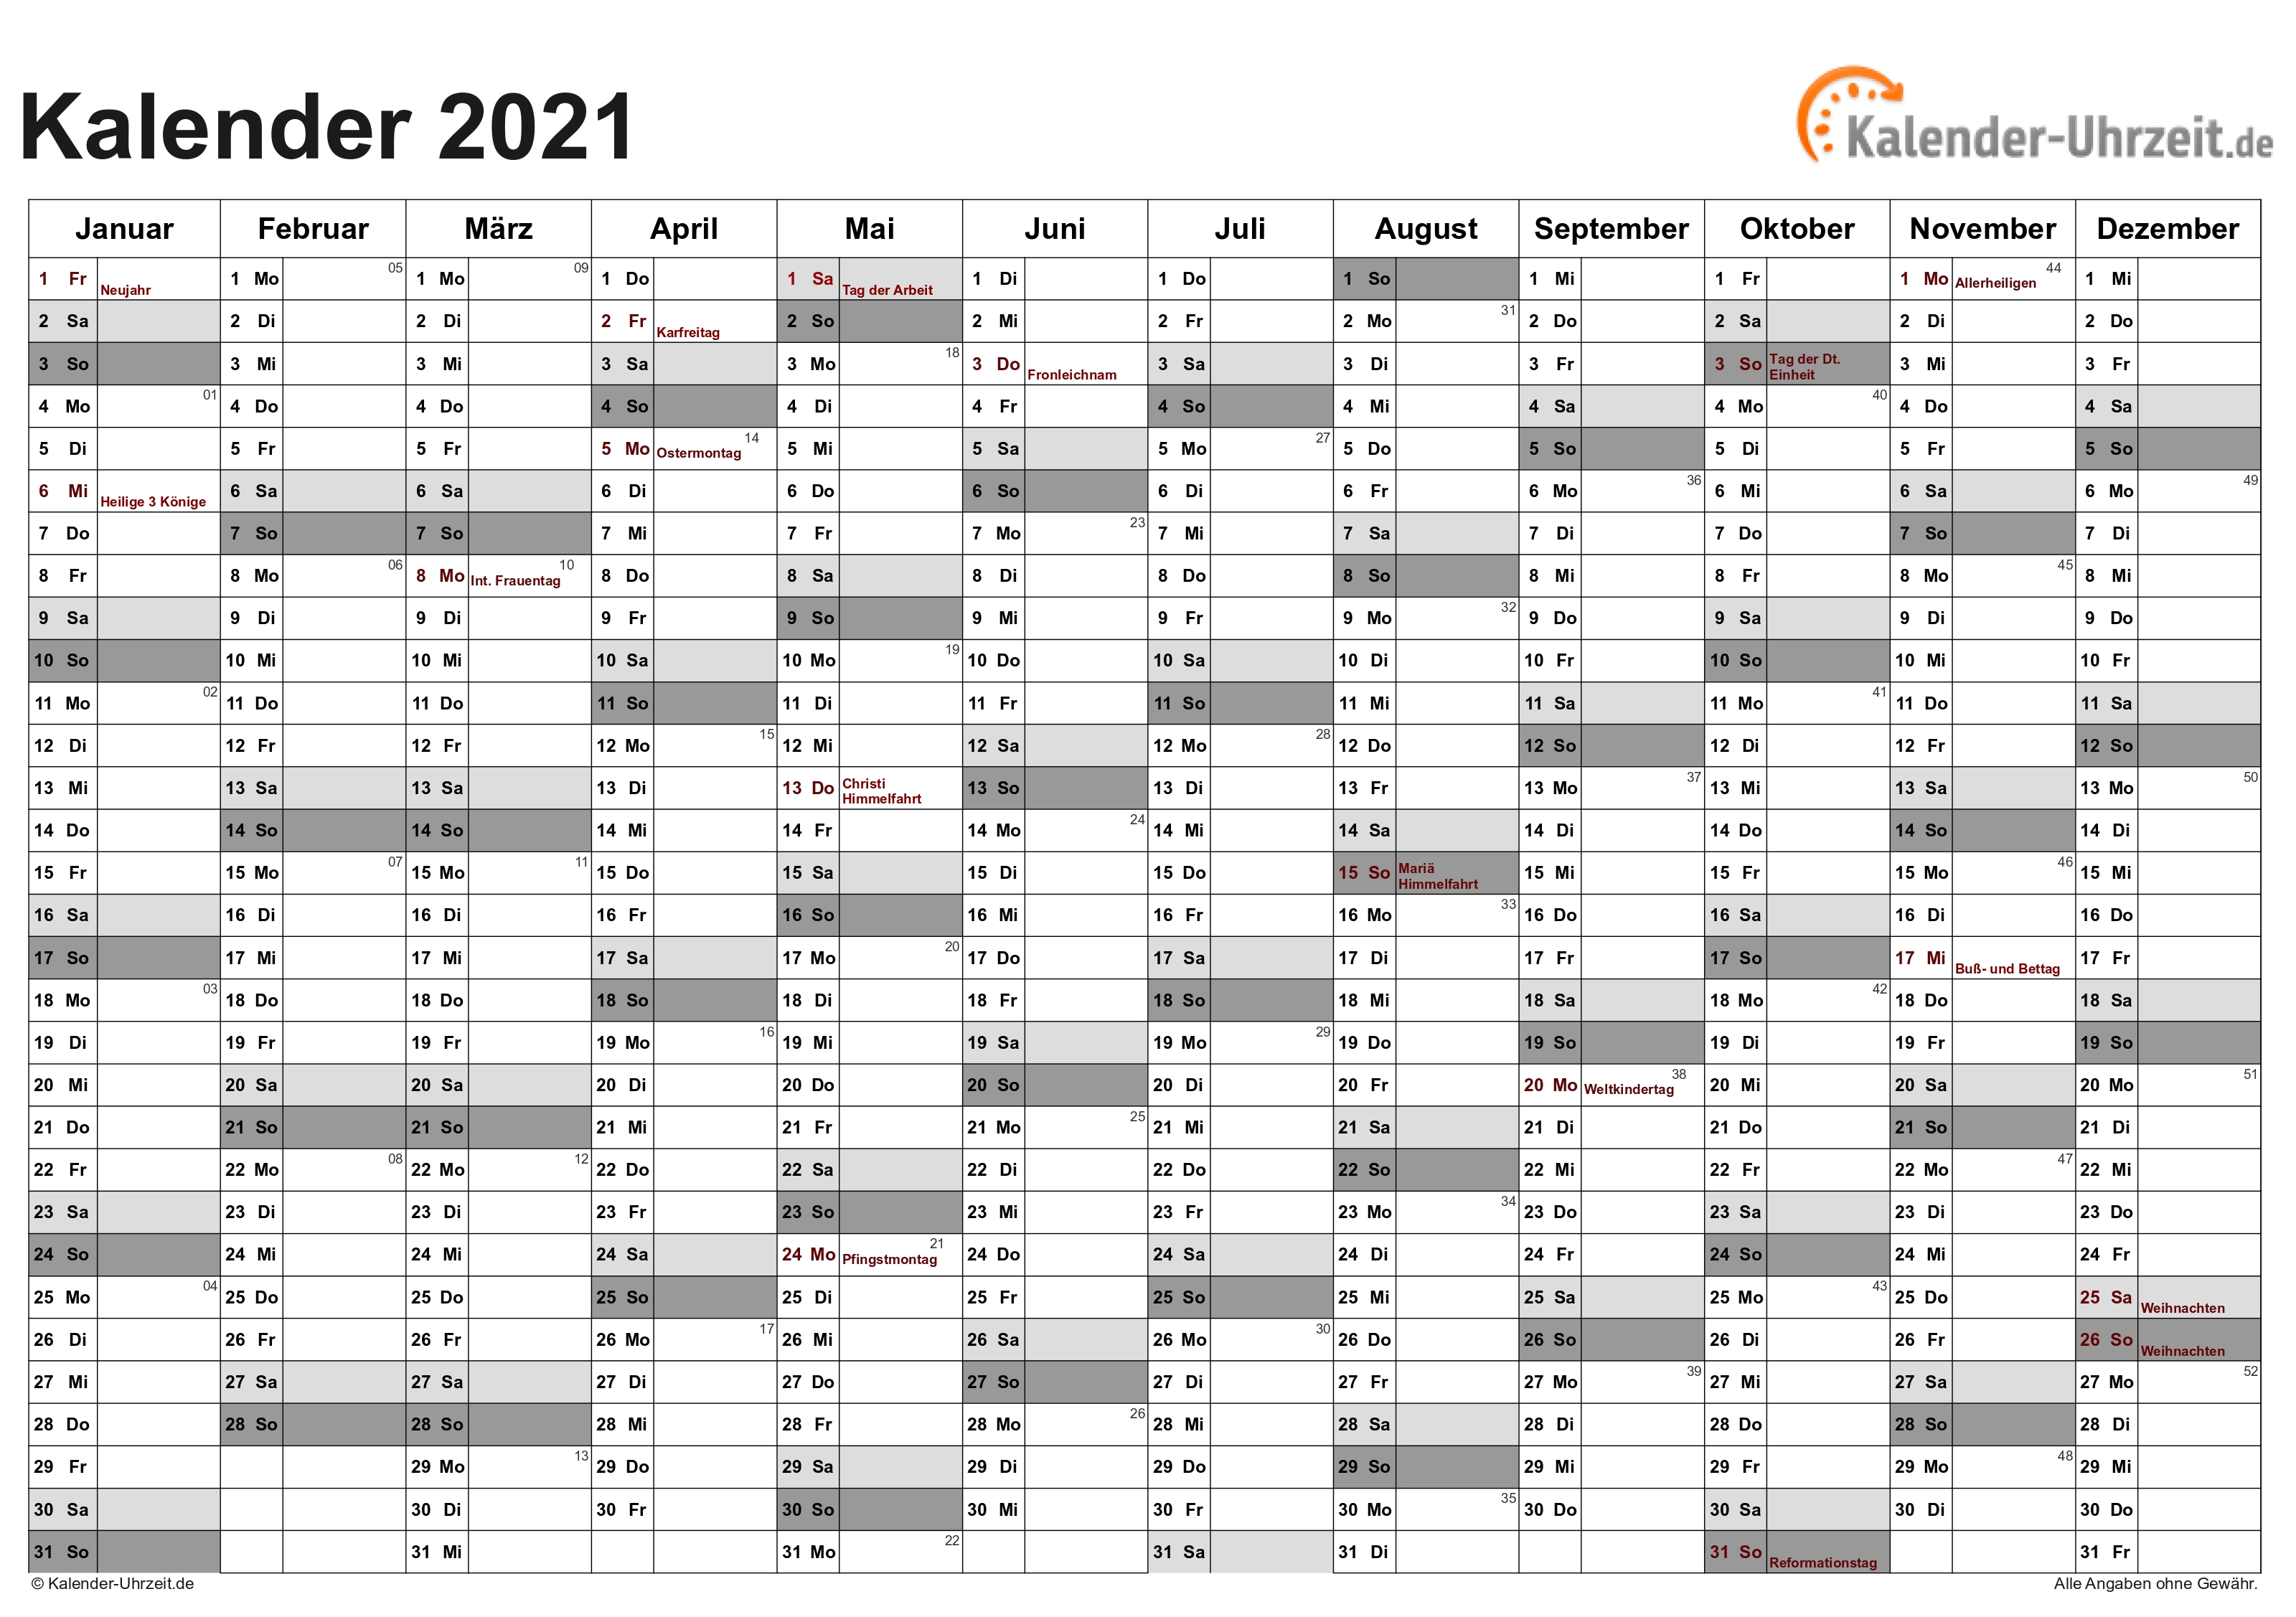 Kalender 2021 Zum Ausdrucken - Kostenlos  Kalender 2021 Zum Ausdrucken Kostenlos